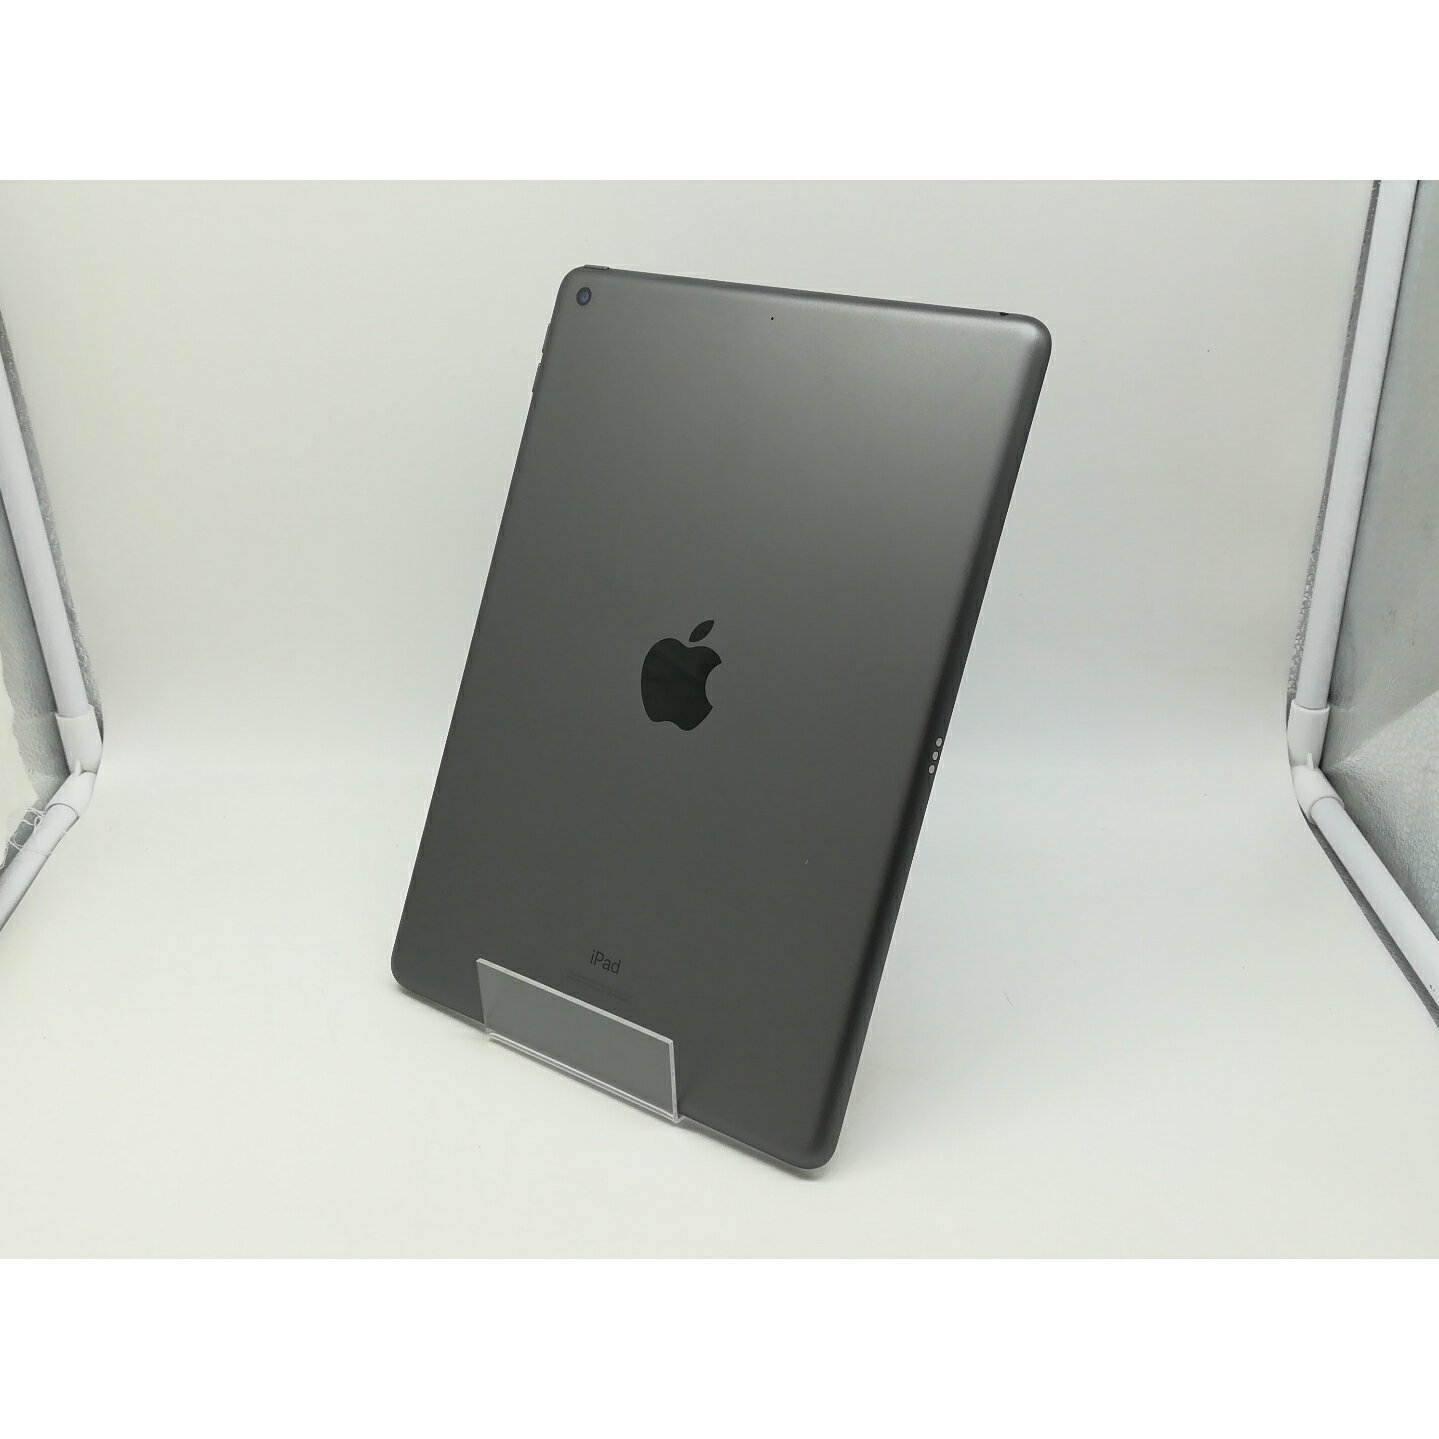 【中古】Apple iPad 第7世代 Wi-Fiモデル 32GB スペースグレイ MW742J/A【横浜】保証期間1ヶ月【ランクA】